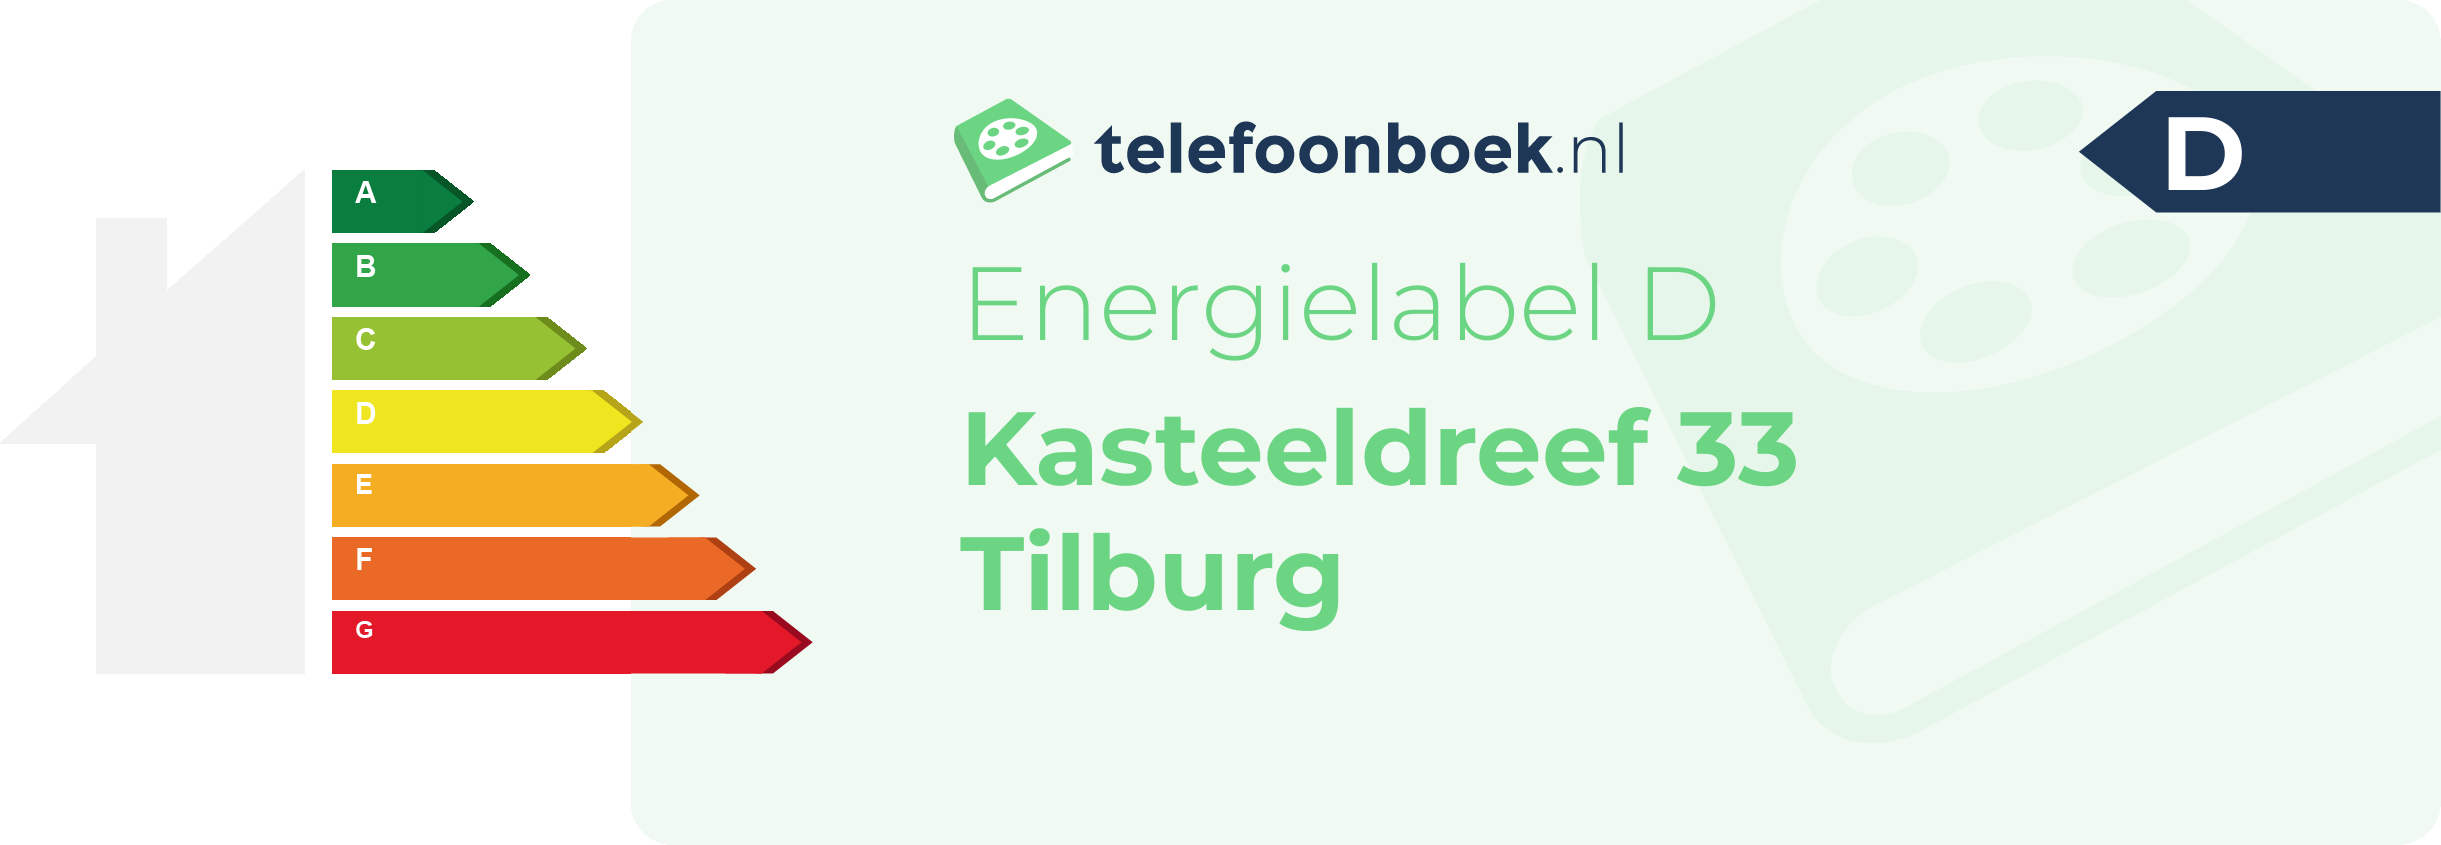 Energielabel Kasteeldreef 33 Tilburg